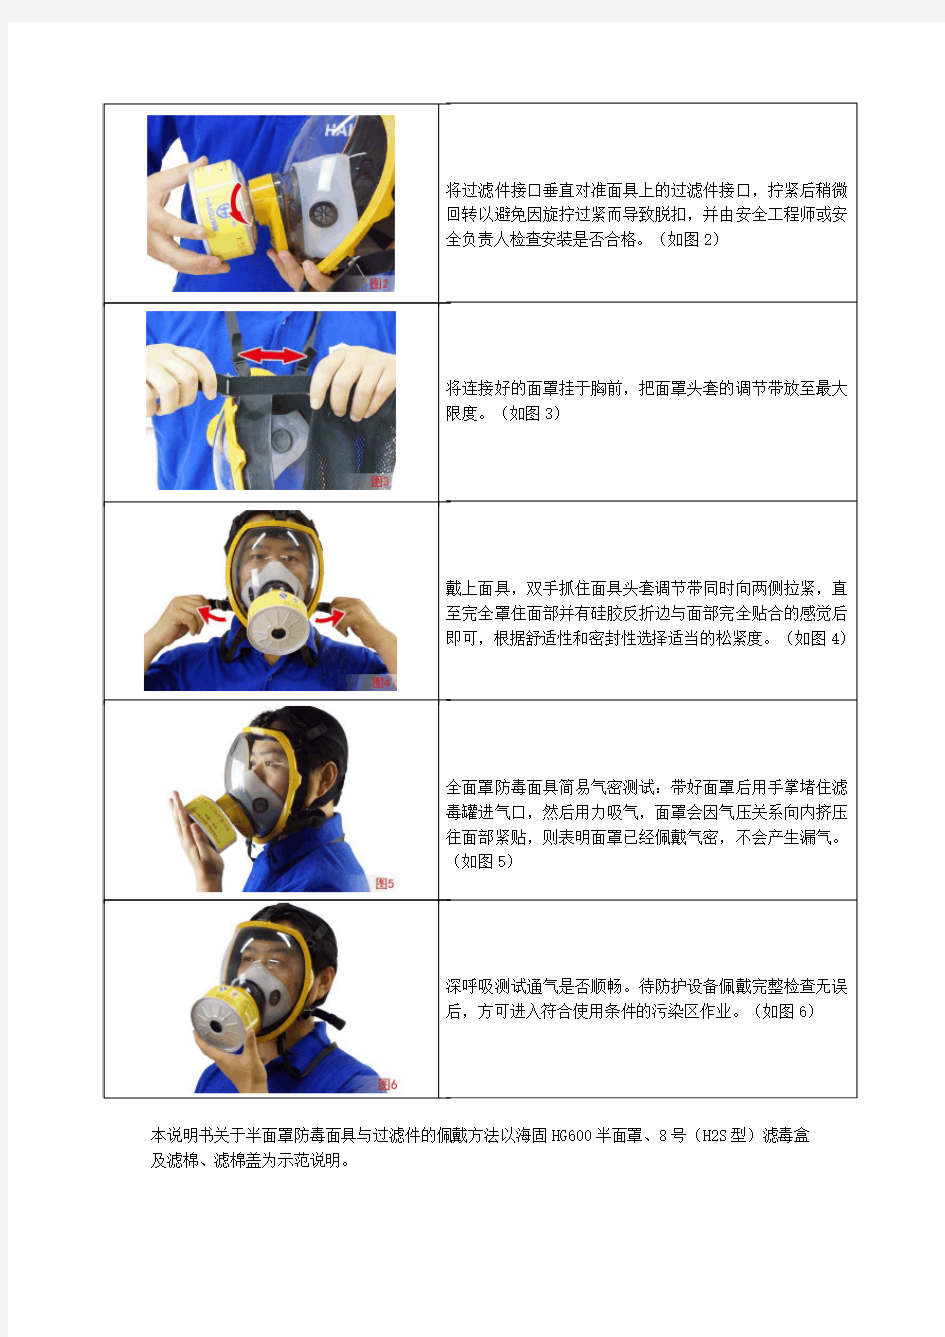 过滤式防毒面具使用方法